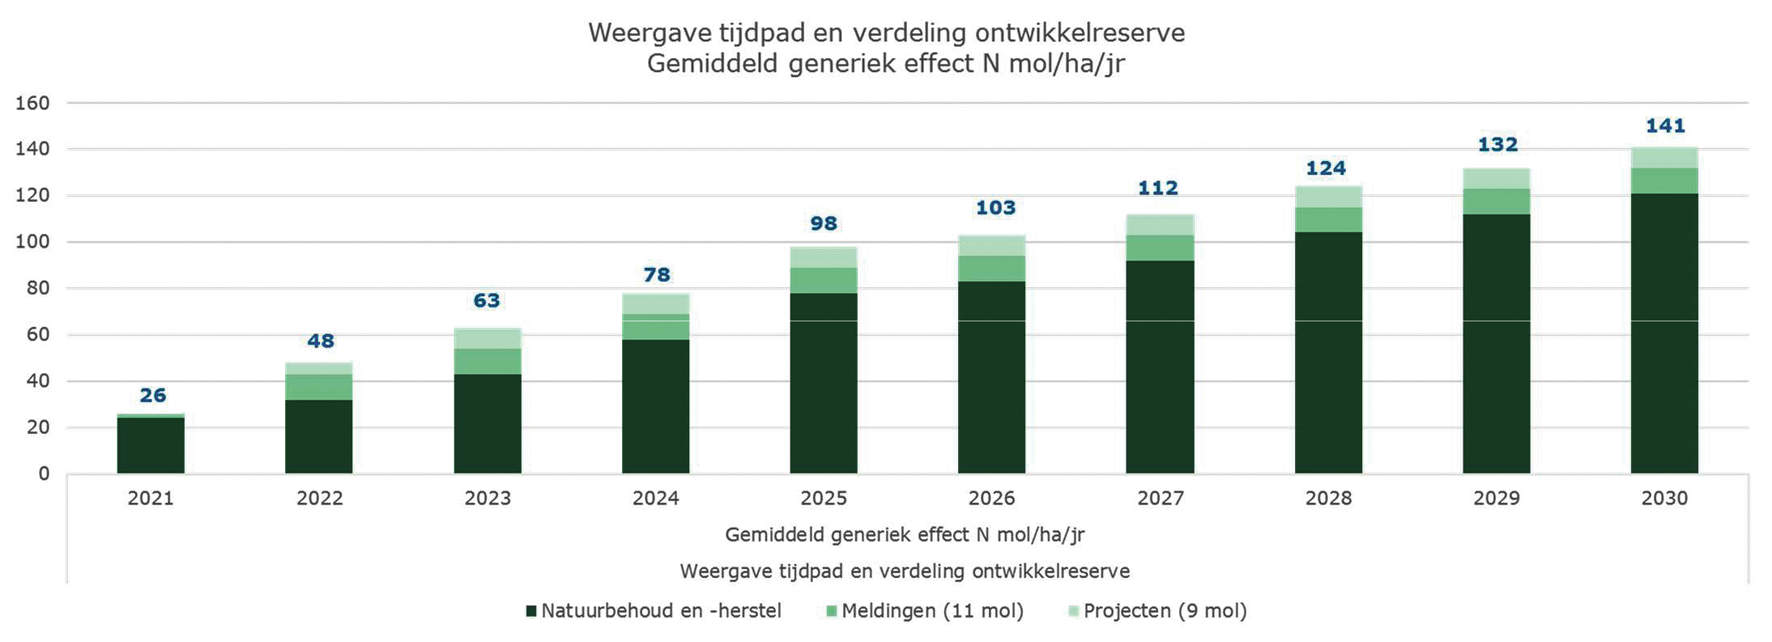 Figuur 1: Weergave tijdpad en verdeling opbrengsten maatregelenpakket structurele aanpak tot aan 2030 (cijfers o.b.v. ambtelijke inschatting en extrapolatie op basis van PBL-analyse stikstofbronmaatregelen, 24 april 2020).